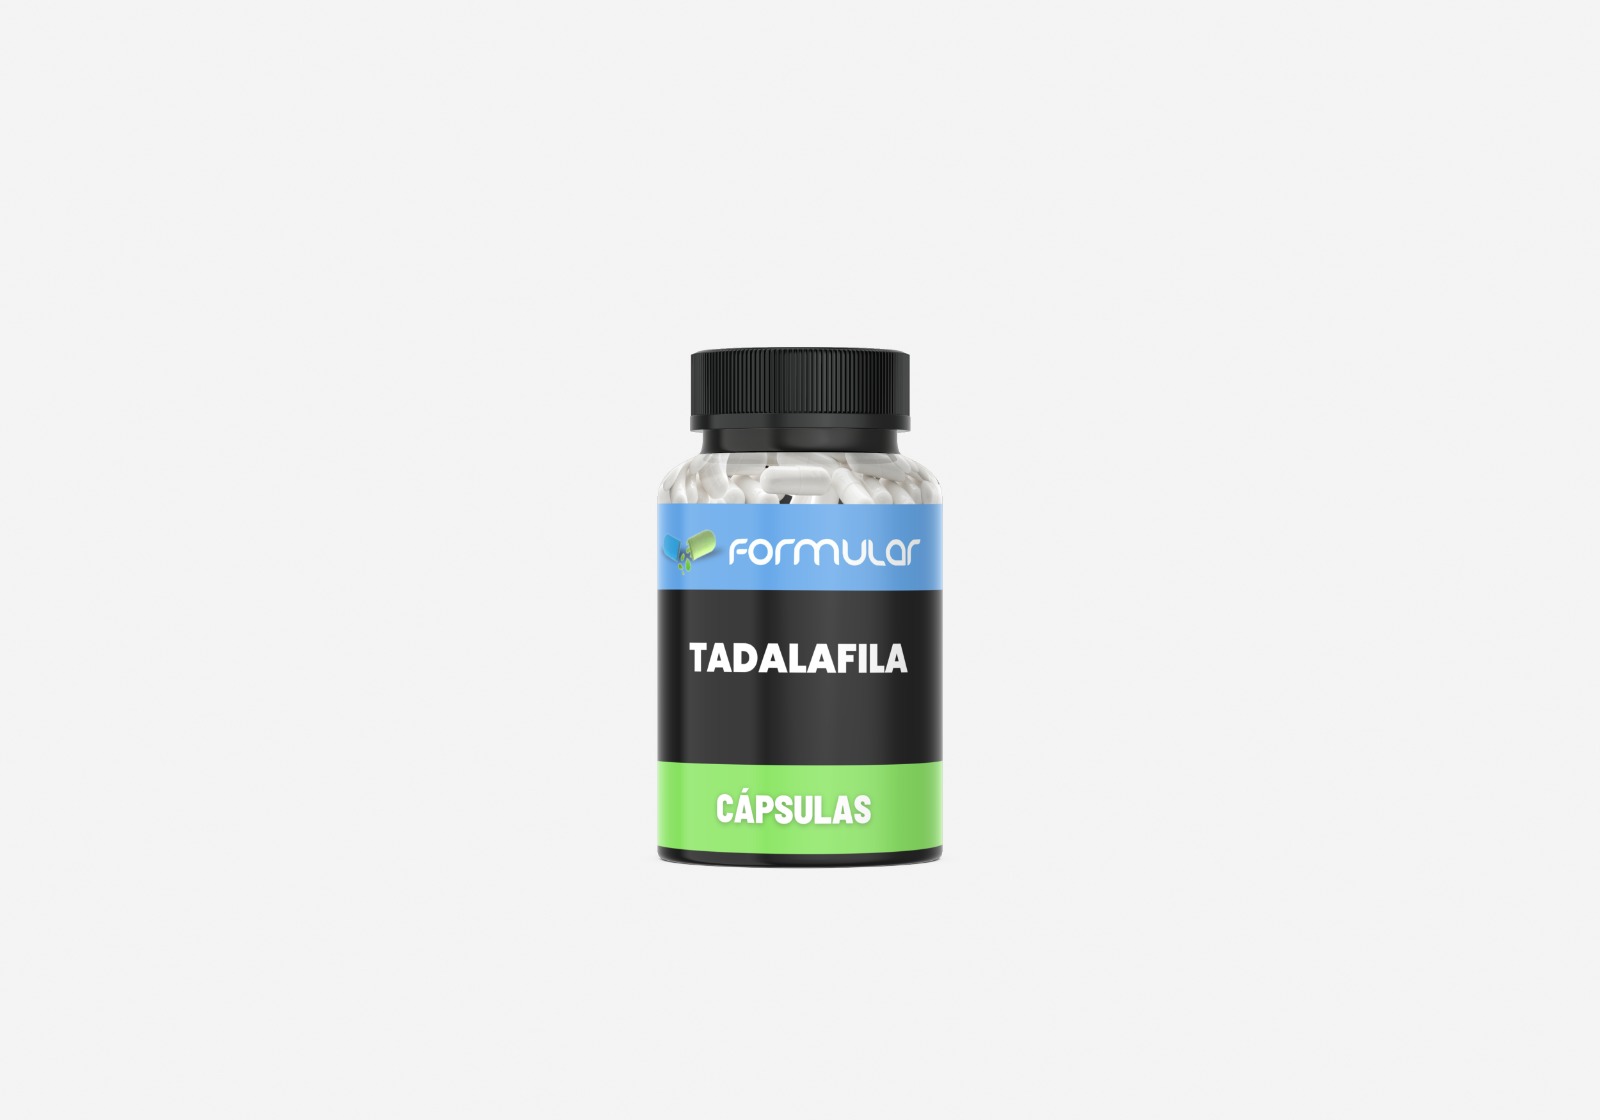 Tadalafila 20mg - Cápsulas - Estimula o Libido e Desempenho Sexual